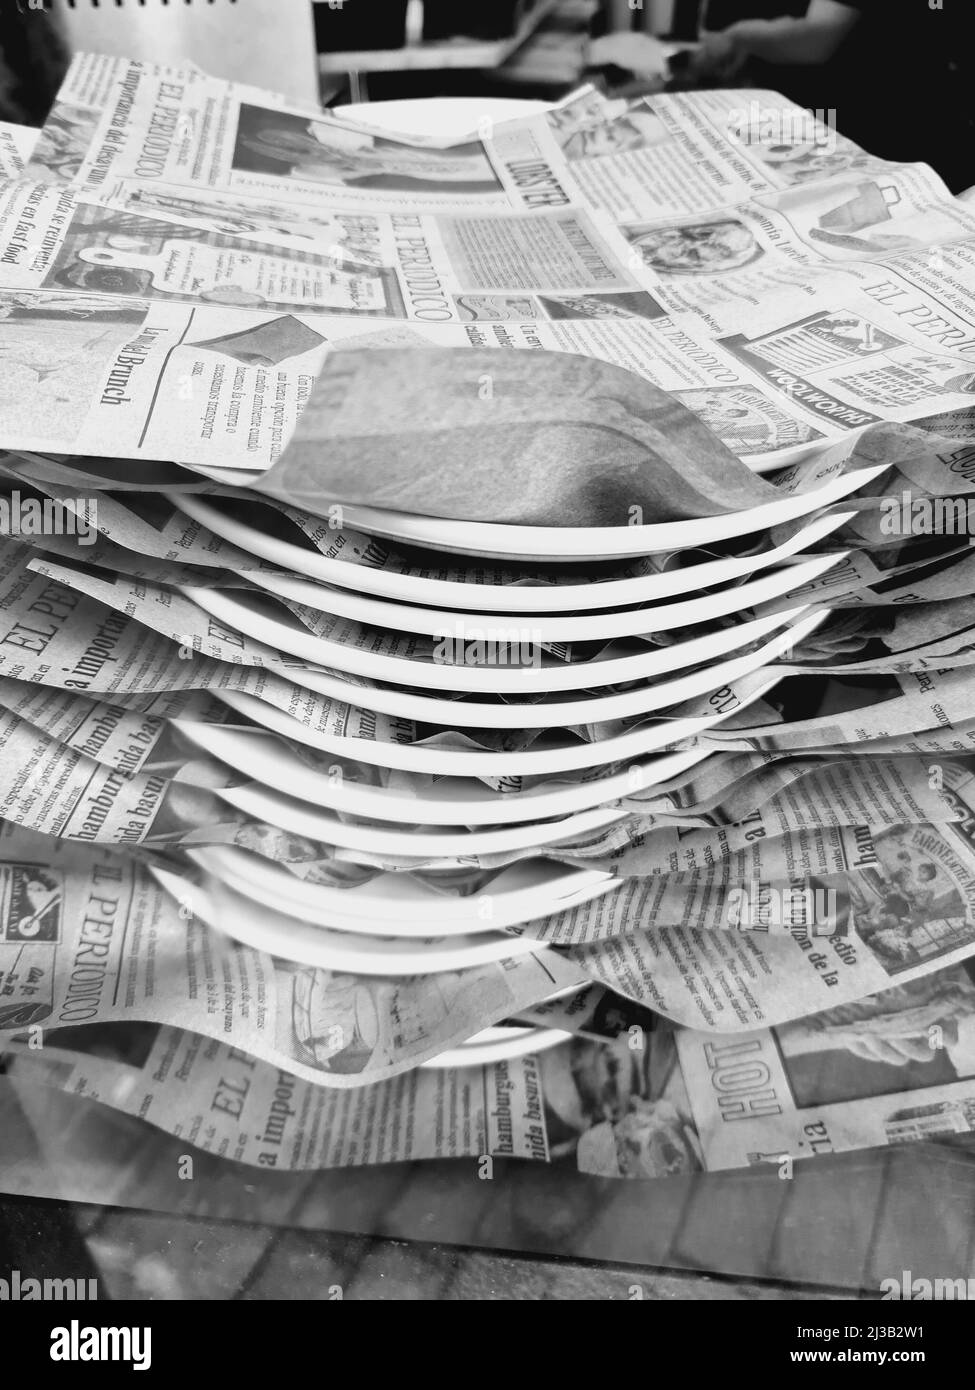 Piatti di cibo con fogli di giornale sulla parte superiore, fotografia in bianco e nero. Foto Stock